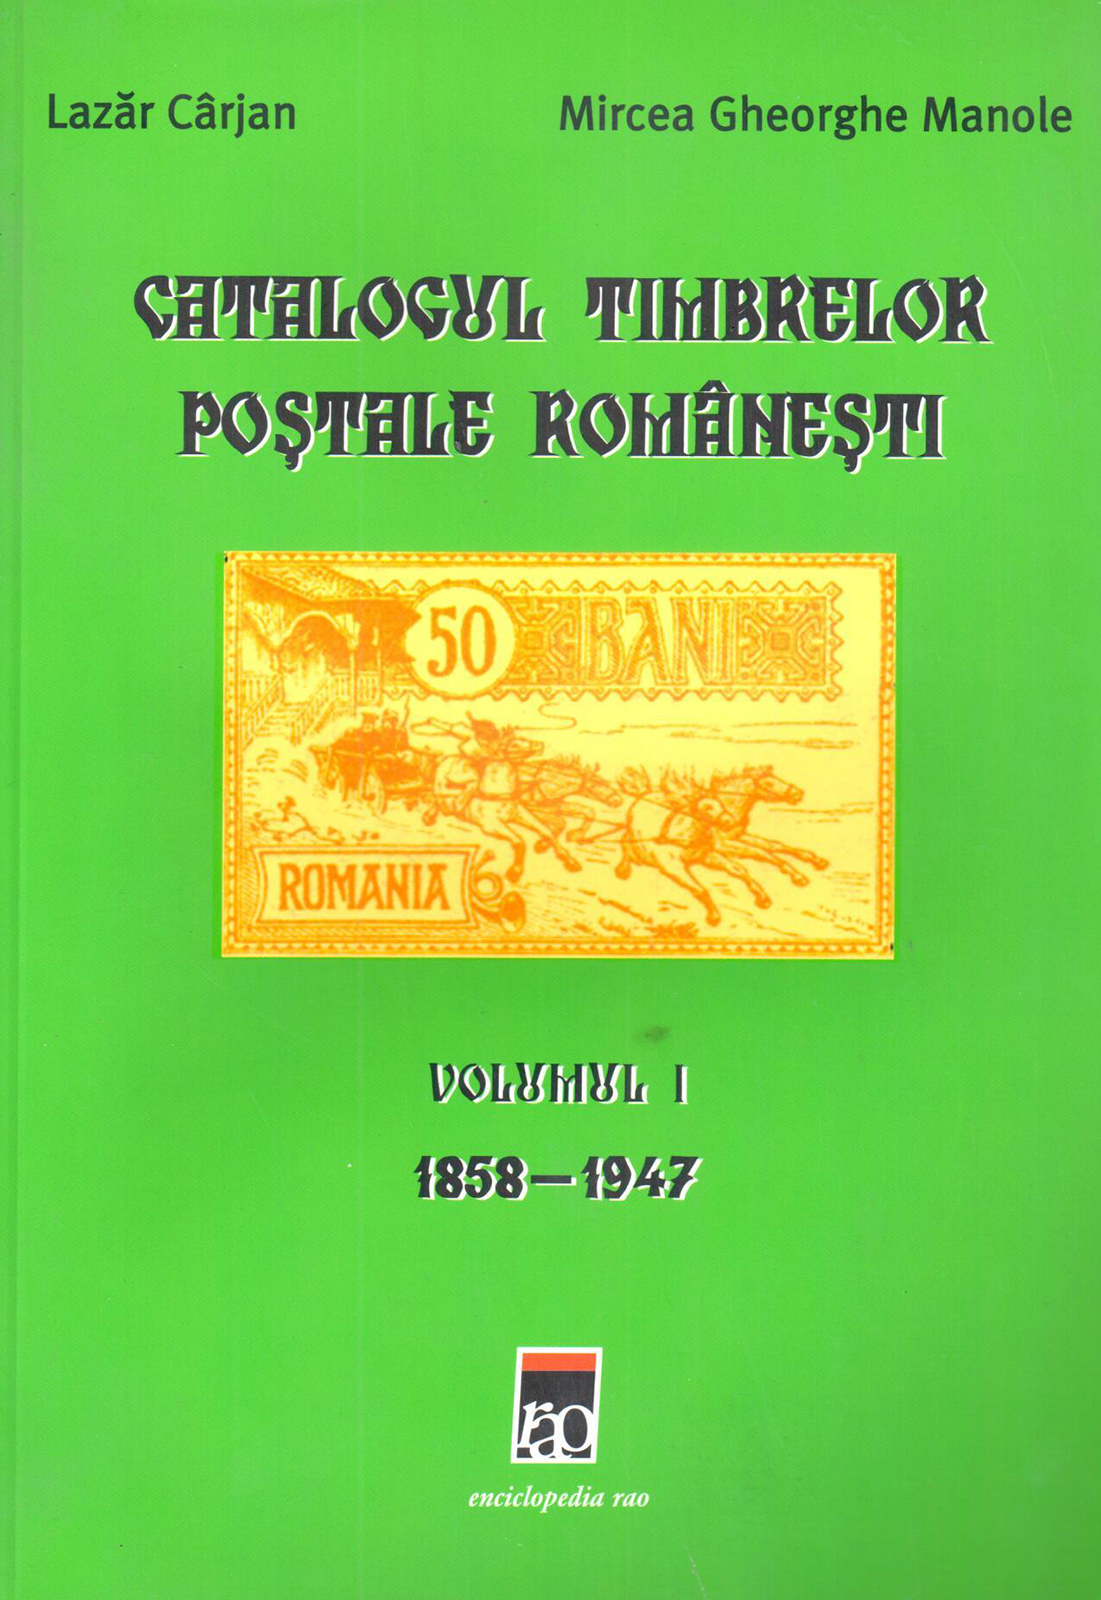 Catalogul timbrelor postale romanesti | Lazar Carjan, Mircea Gheorghe Manole